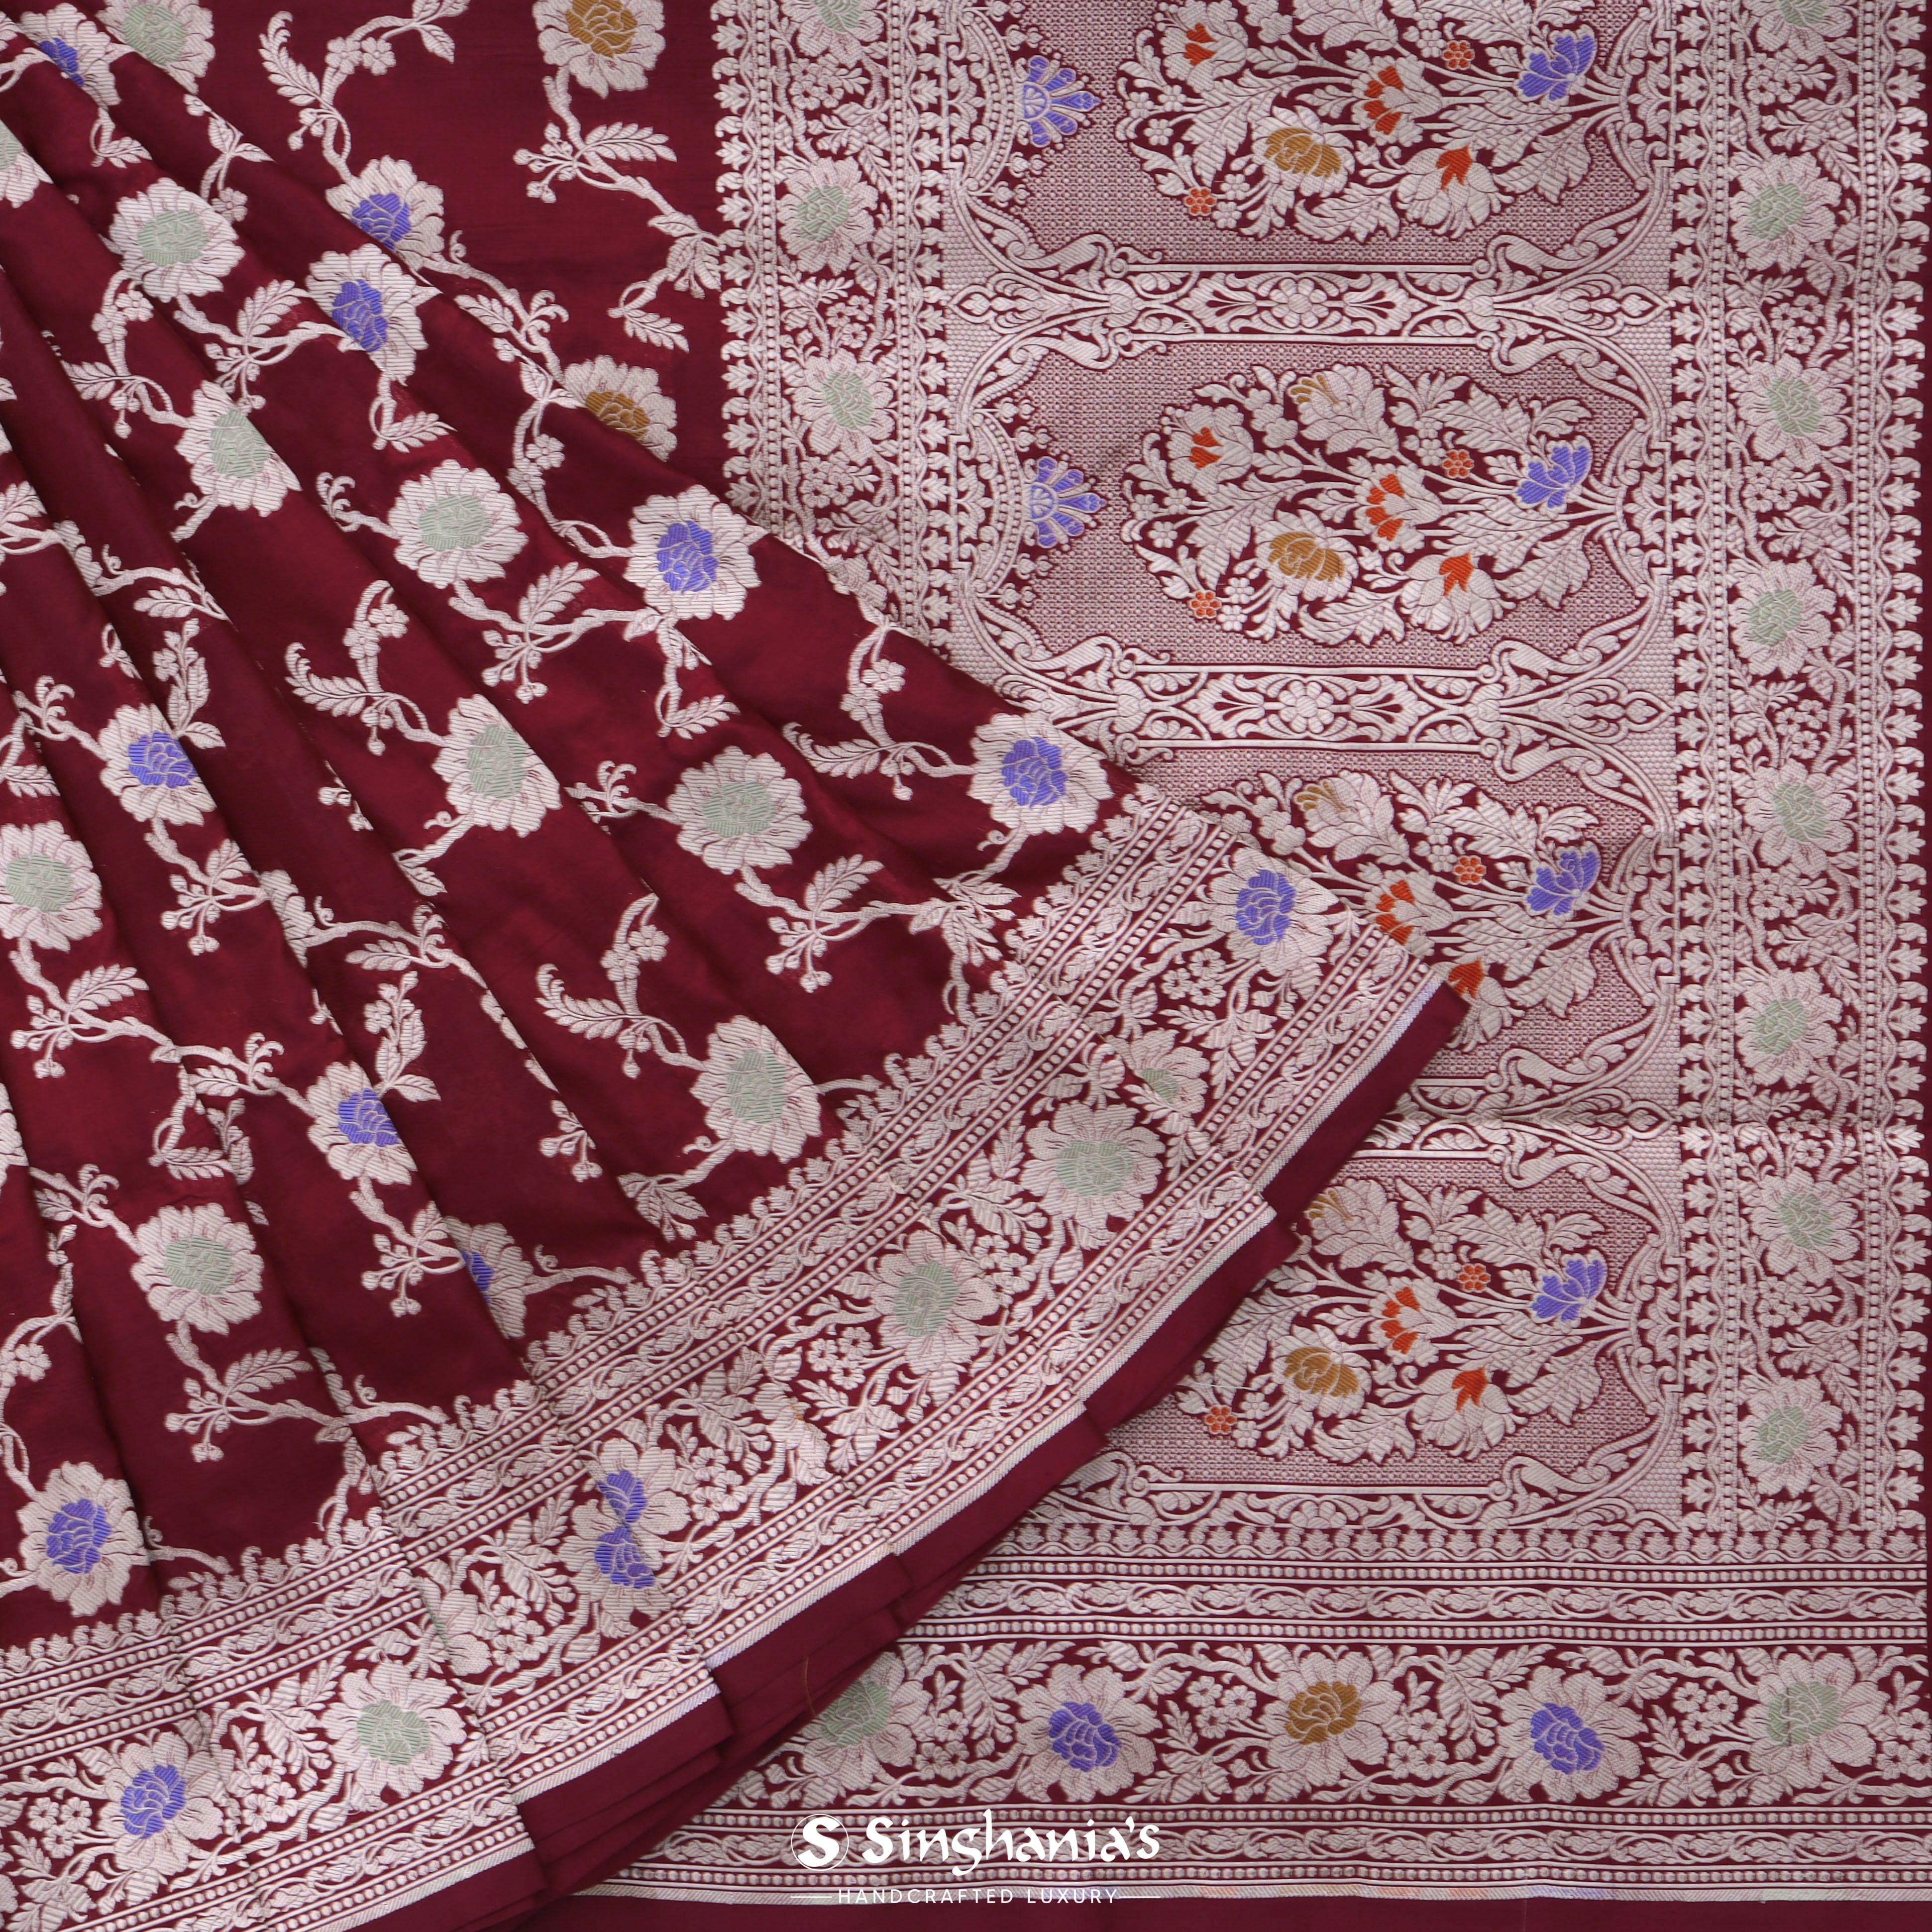 Mahogany Red Banarasi Silk Saree With Floral Jaal Pattern